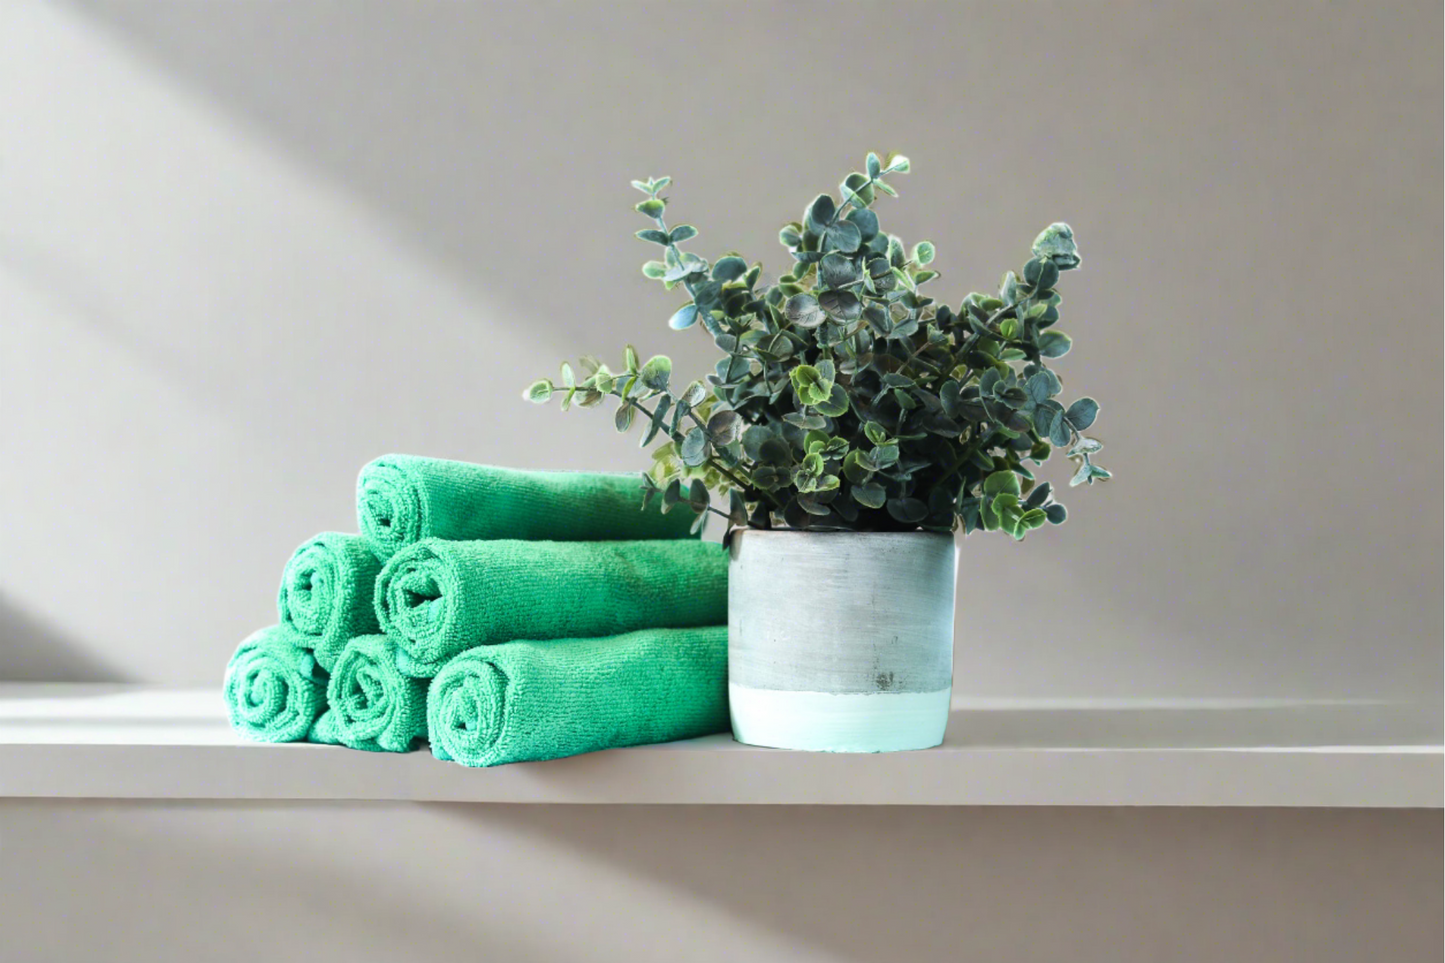 Culleoka Company green microfiber towels